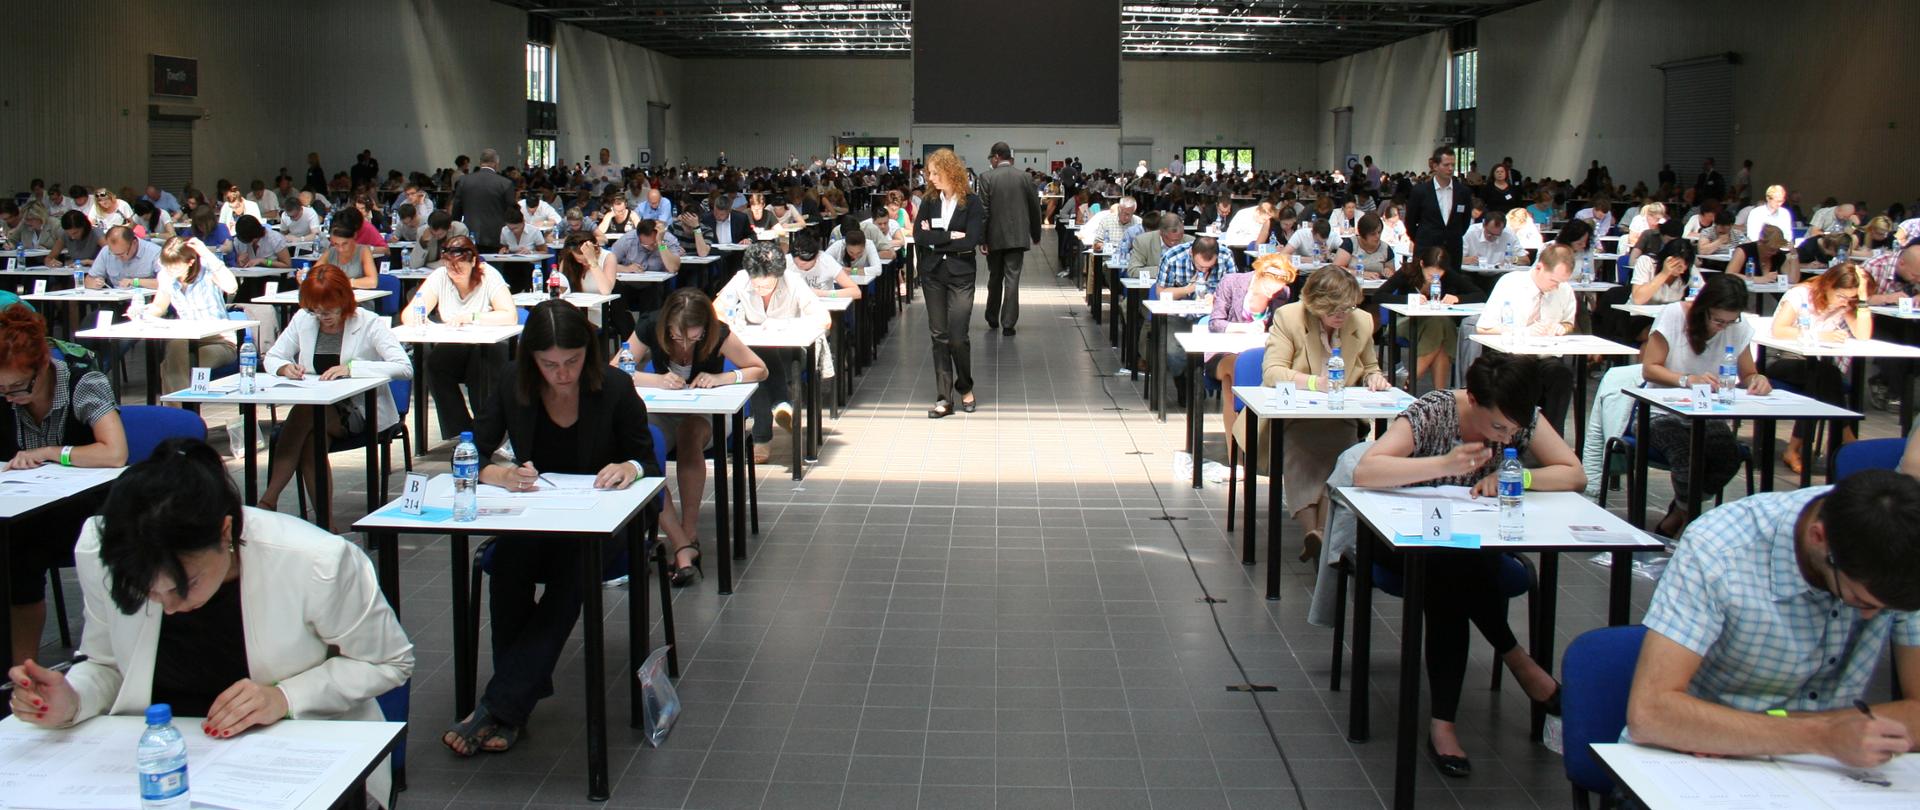 Uczestnicy postępowania kwalifikacyjnego siedzą przy stolikach w dużej hali